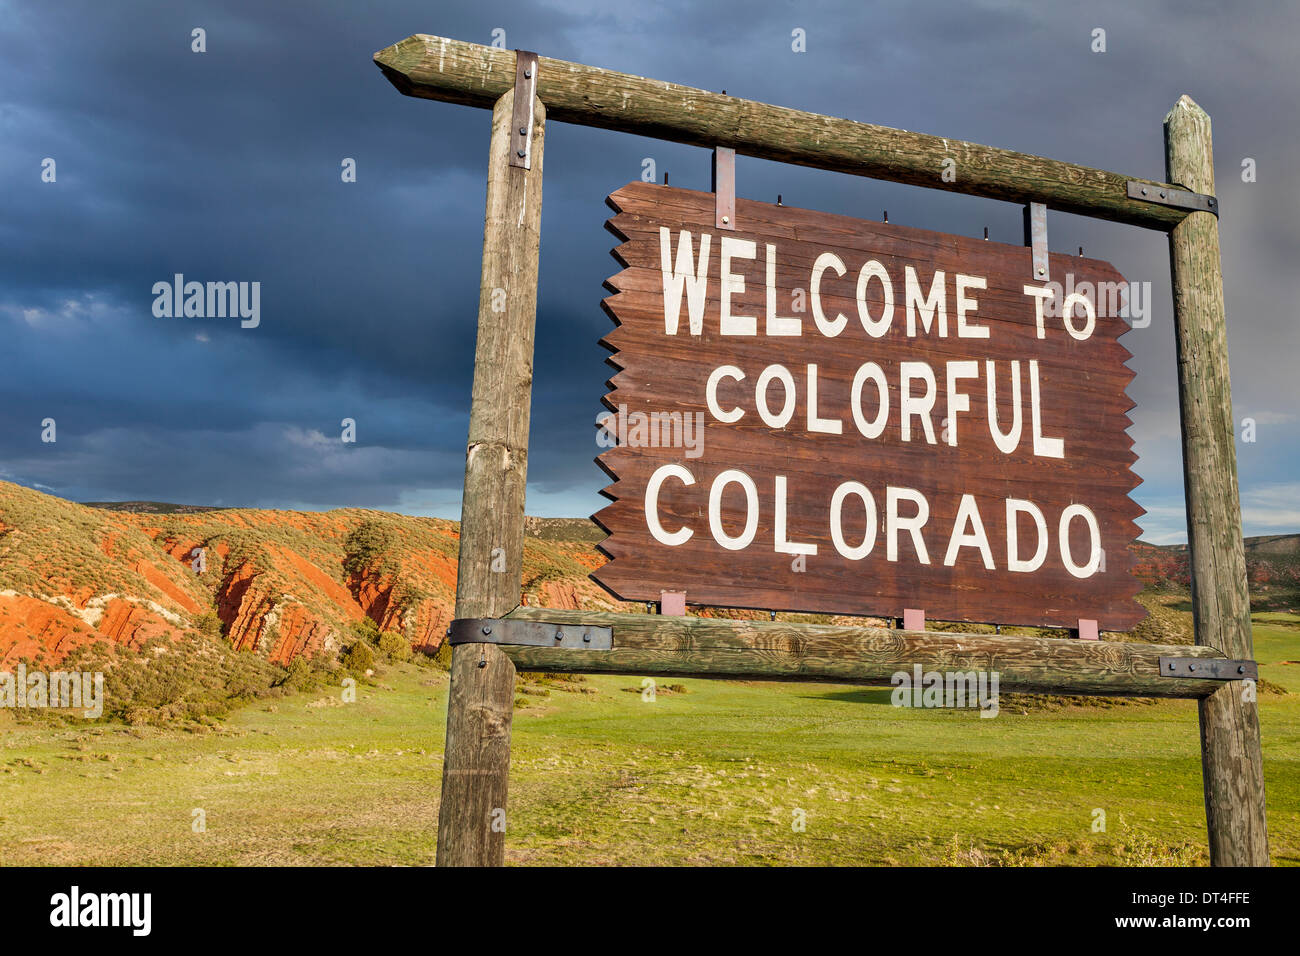 Willkommen Sie bei bunte Colorado am Straßenrand Holzschild mit rotem Sandstein Felsen im Hintergrund Stockfoto